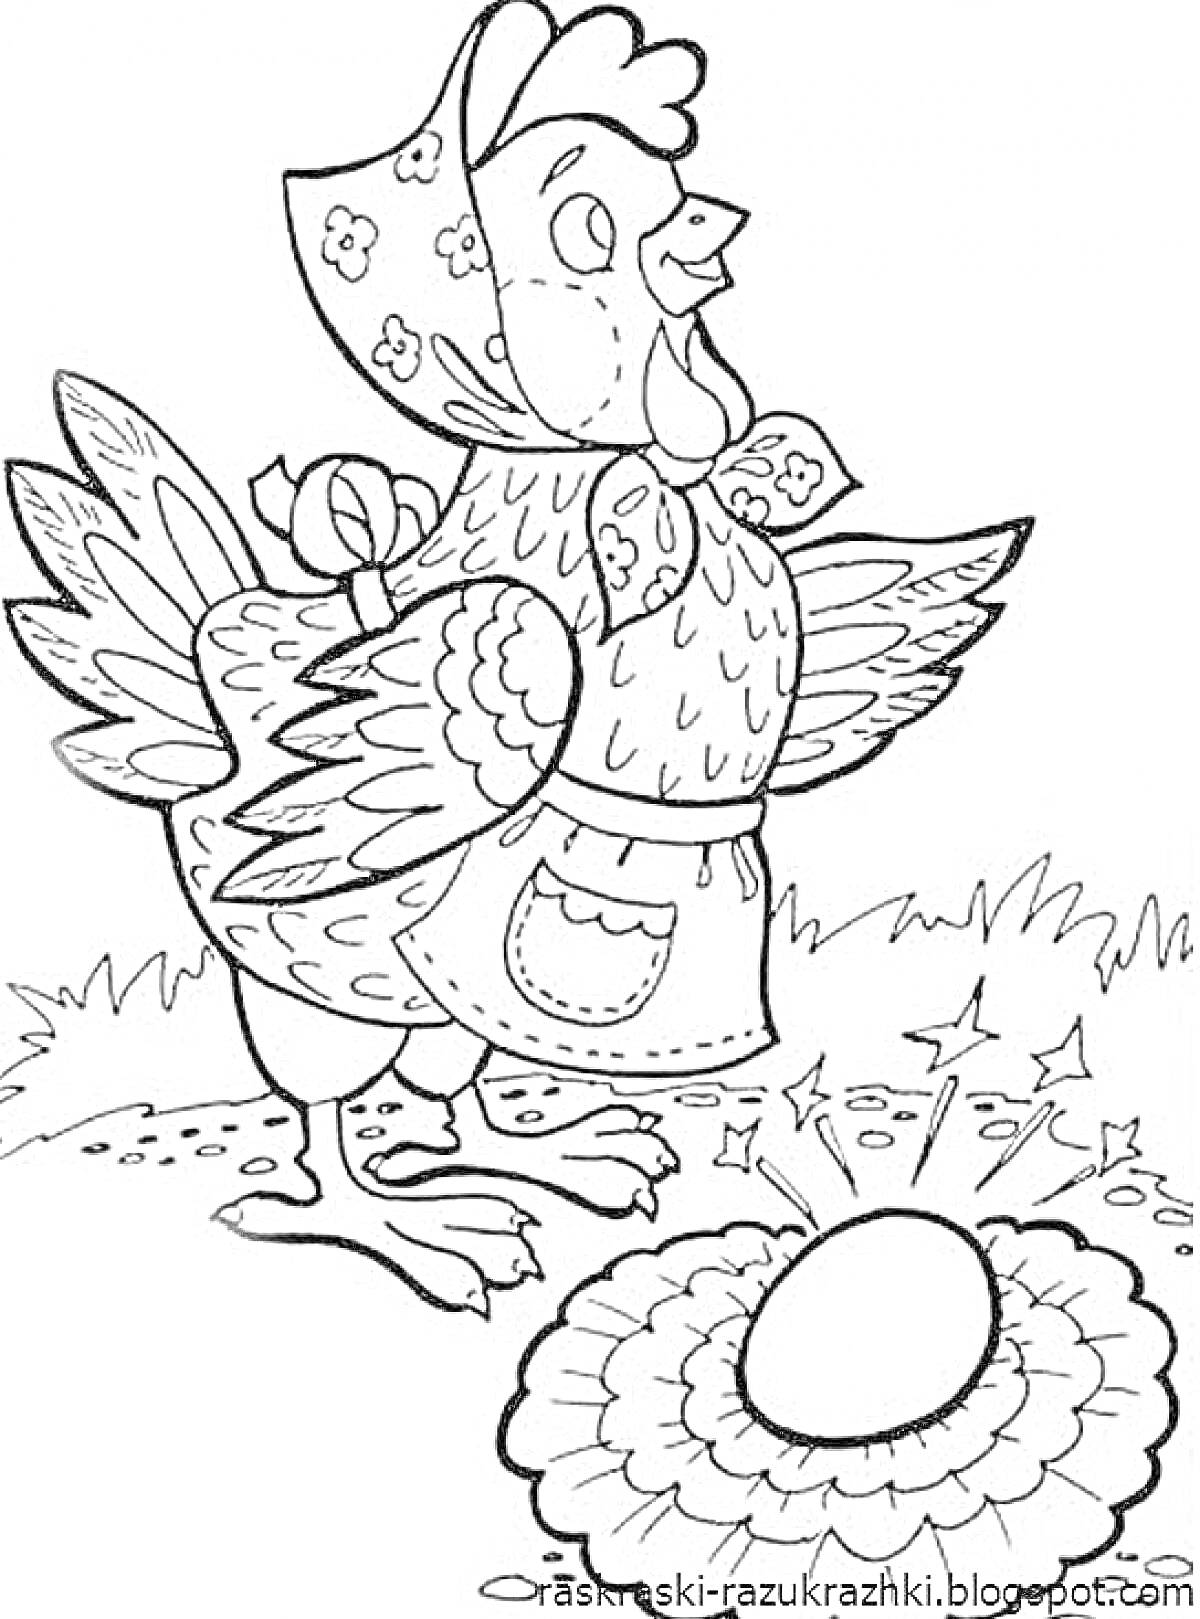 Курица рядом с золотым яйцом, курица в платке и фартуке, травинка и кустики на заднем фоне, золотое яйцо на земле